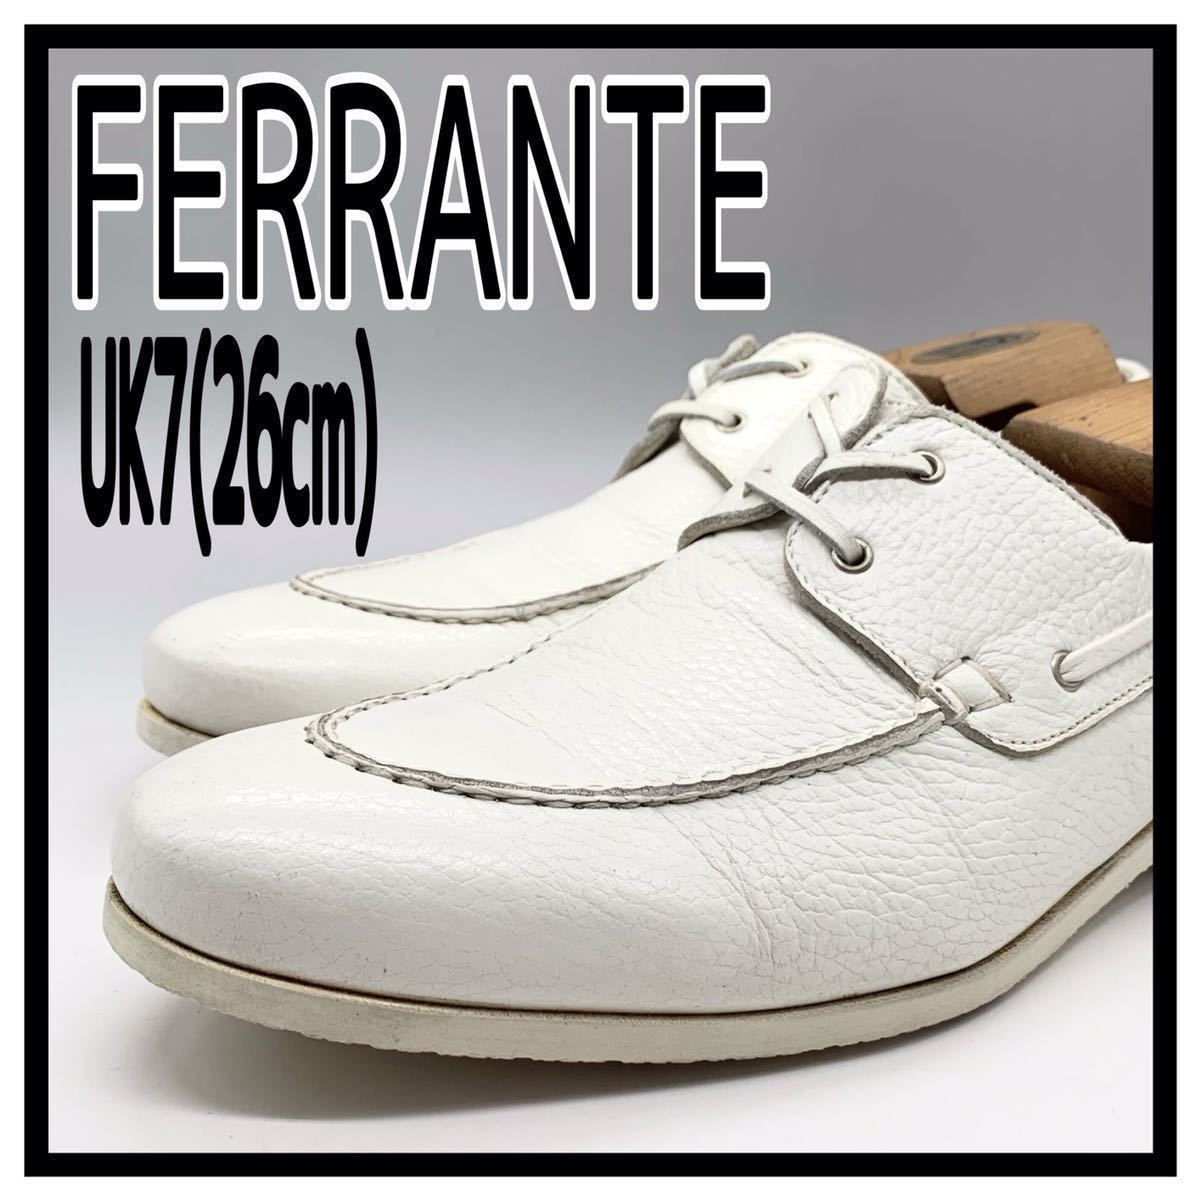 FERRANTE (フェランテ) デッキシューズ モカシンシューズ レザー ホワイト 白 UK7 26cm 革靴 イタリア製 メンズ